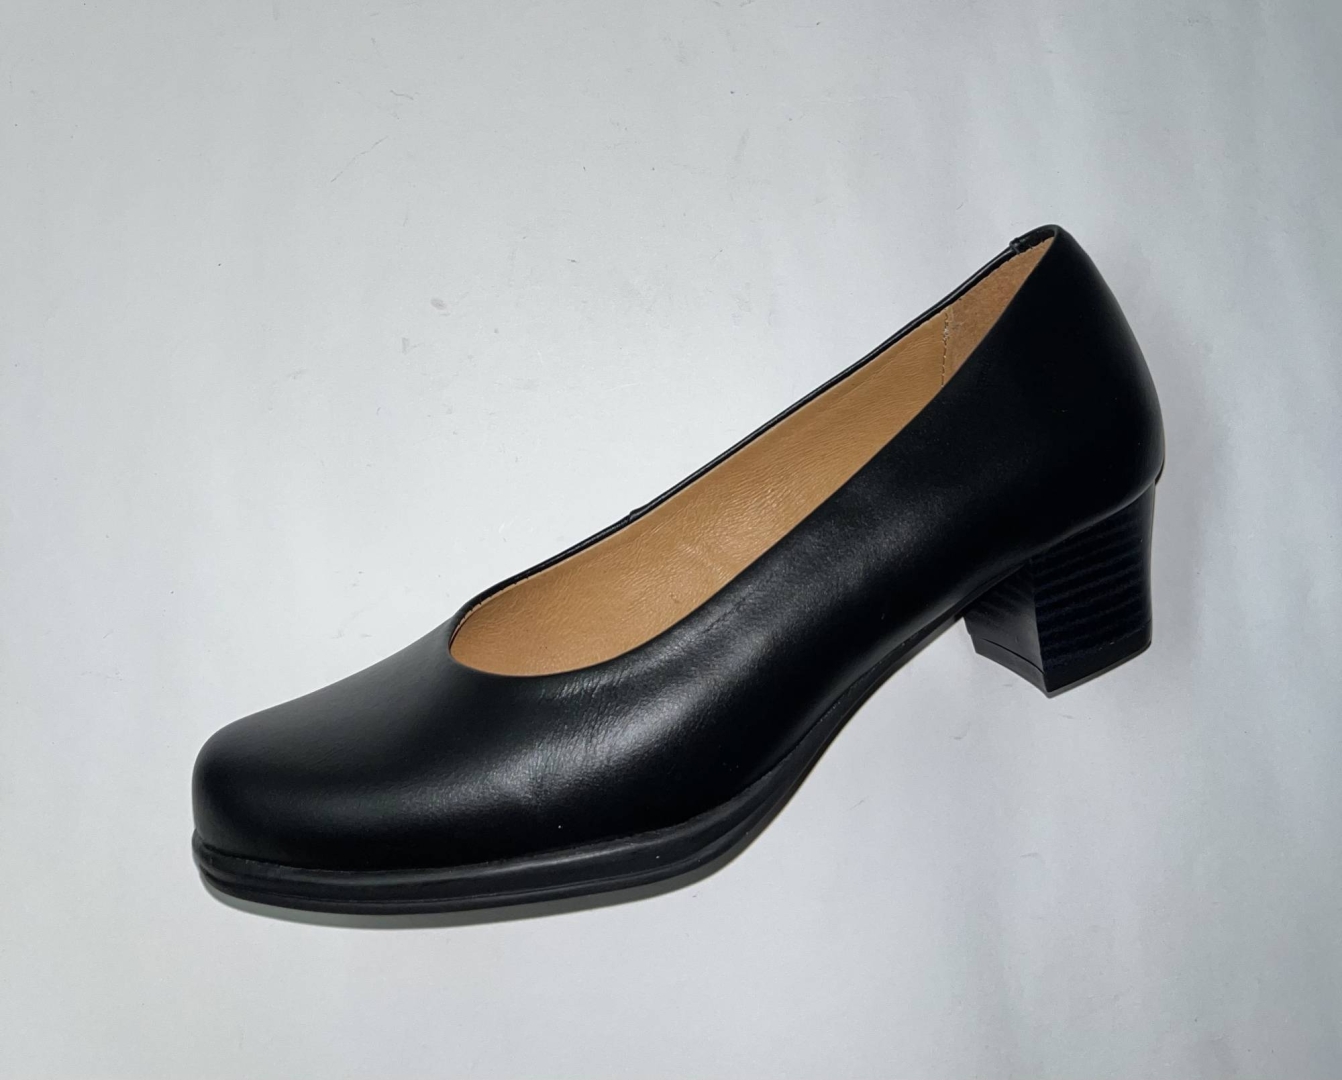 Zapato salón en piel negra de DANIVAL 404001. M-225